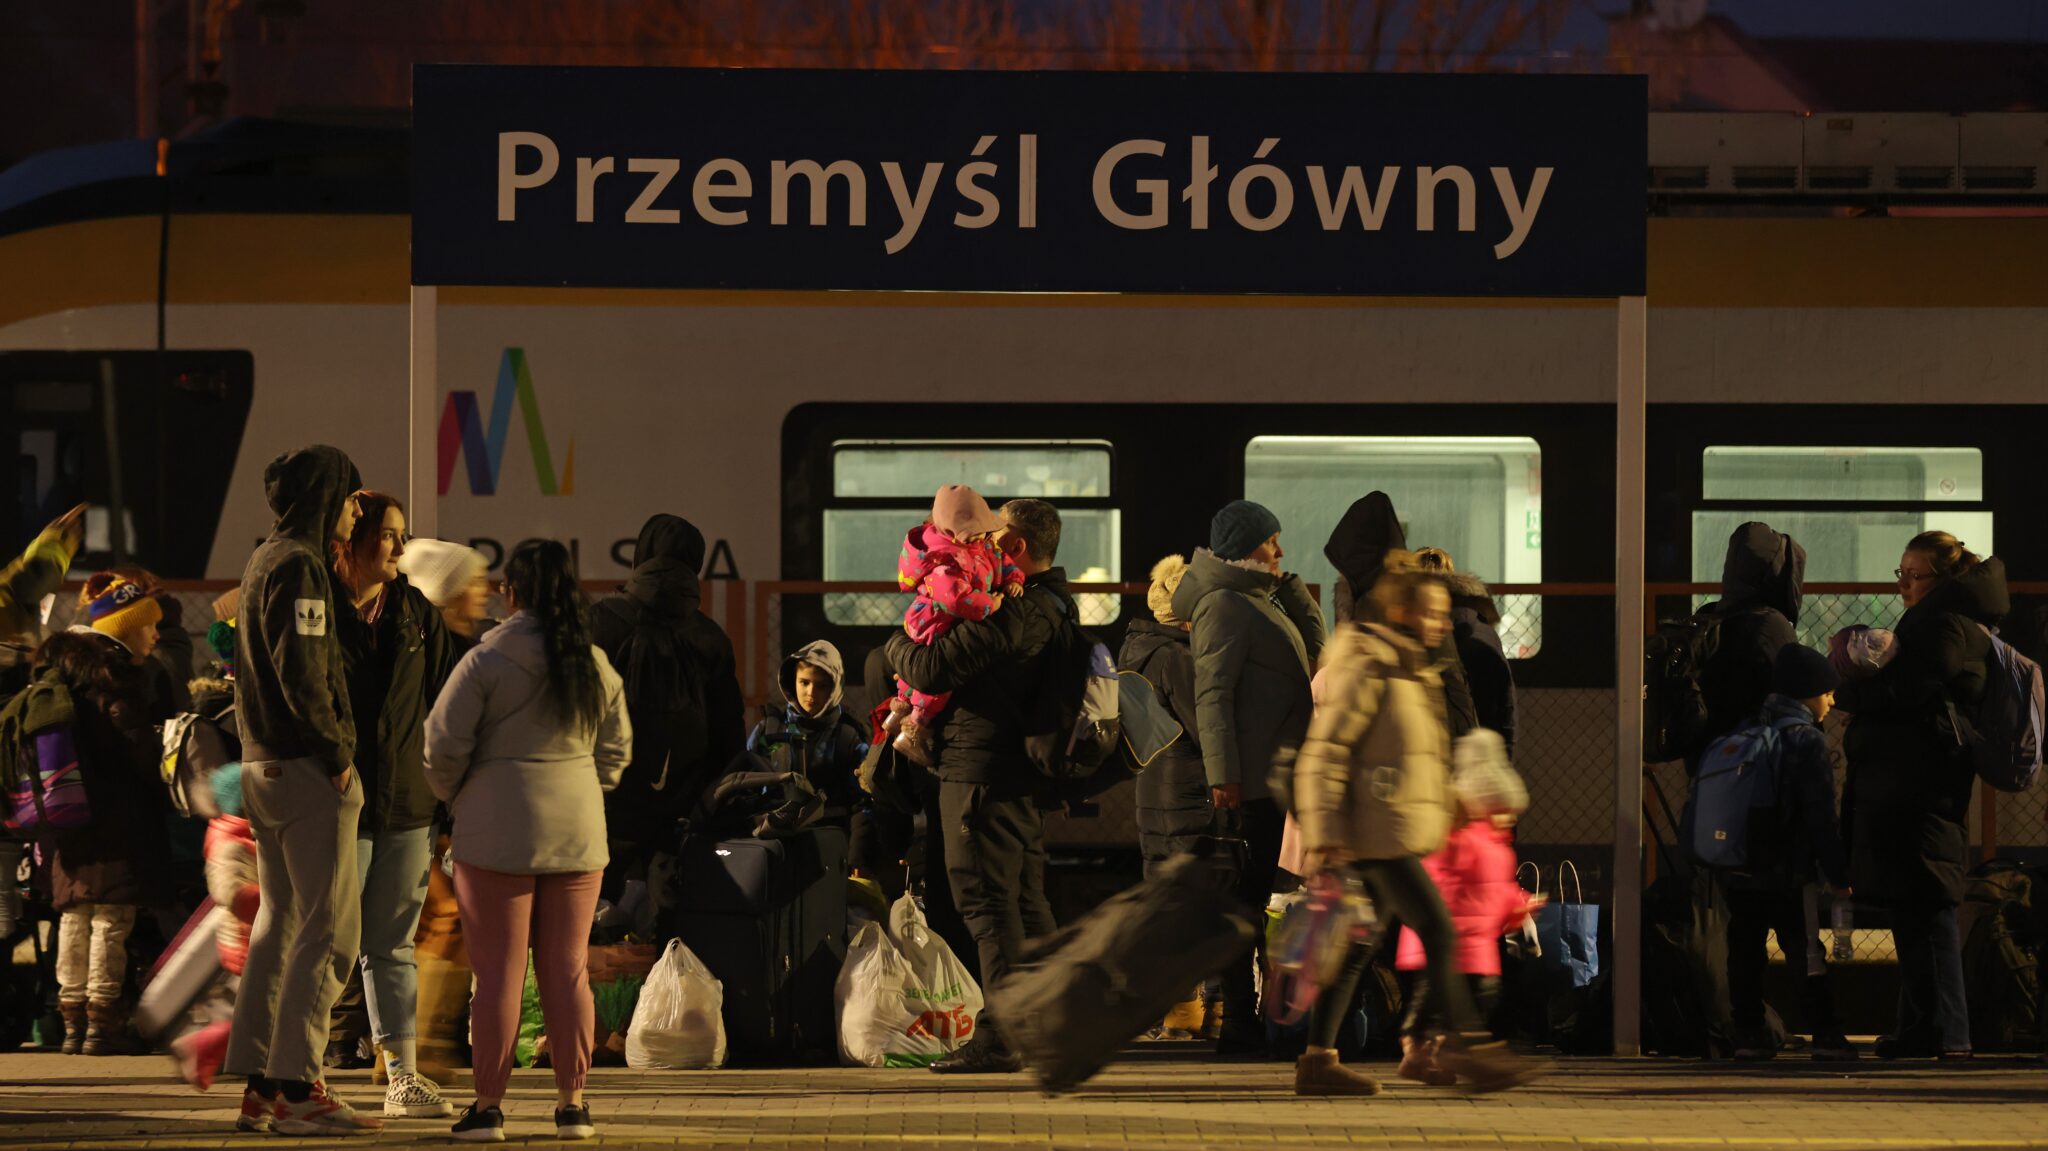 estacion de trenes en przemysl polonia refugio de decenas de ucranianos